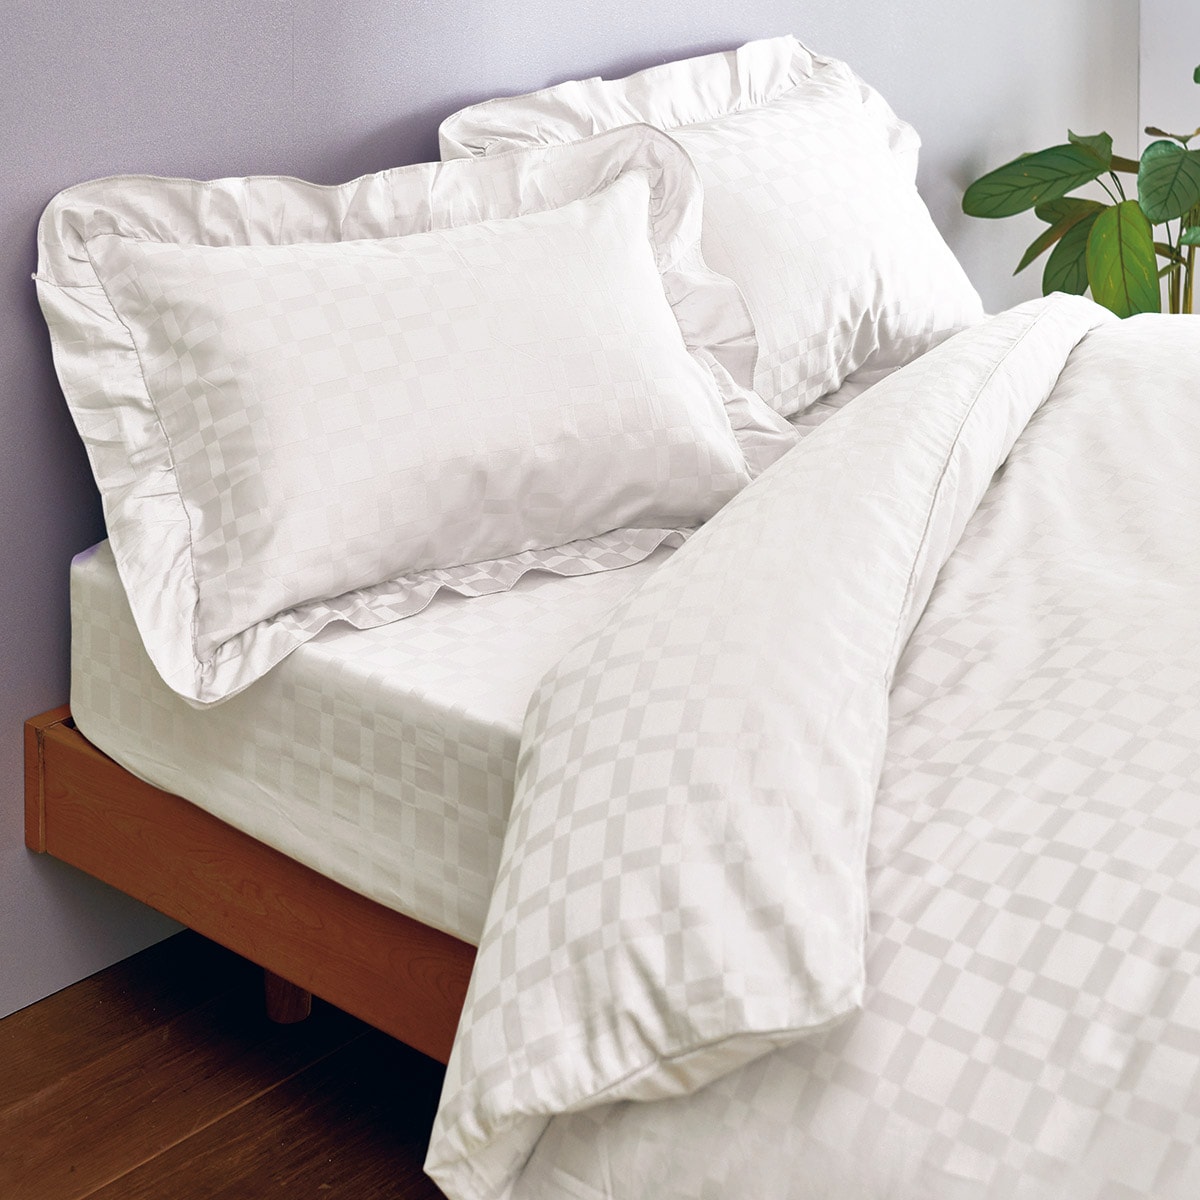 綿%掛け布団カバーホテル感覚の高密度タイプ   寝具の通販なら